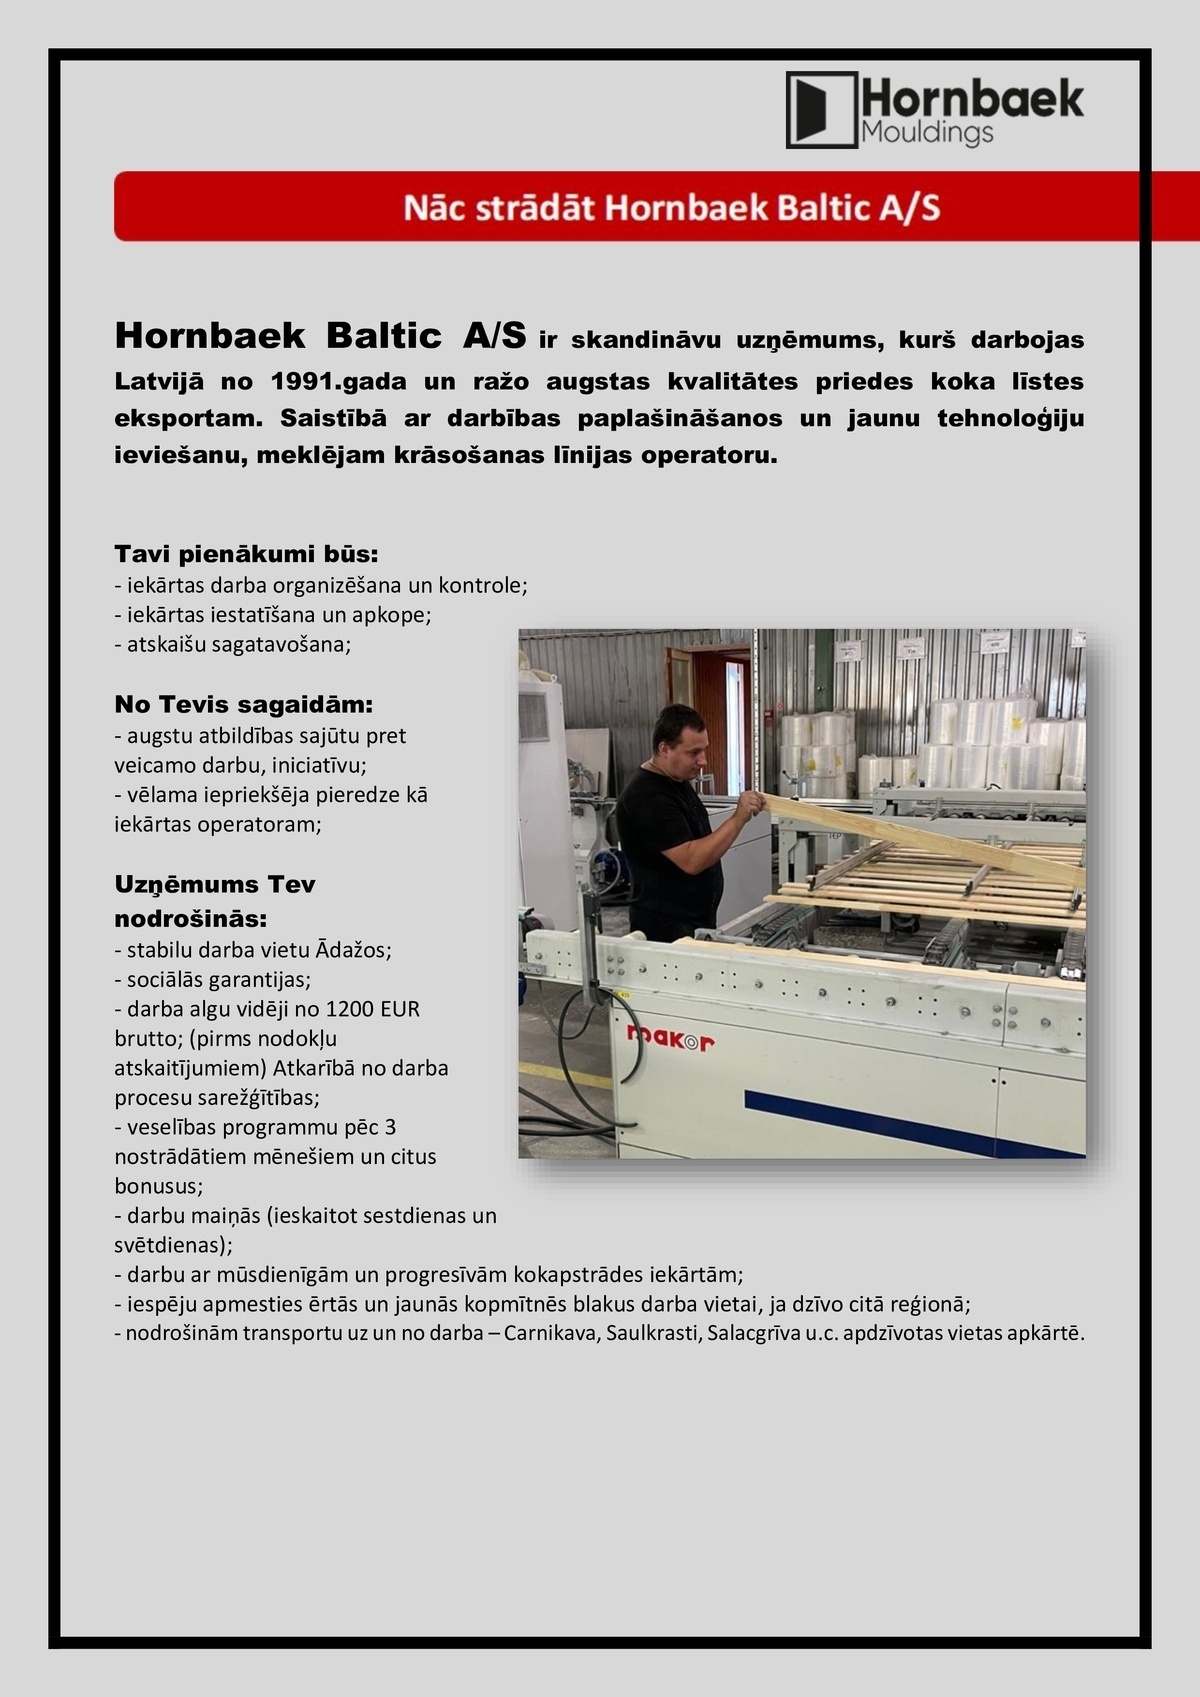 Hornbaek Baltic, AS Krāsošanas līnijas operators/-e